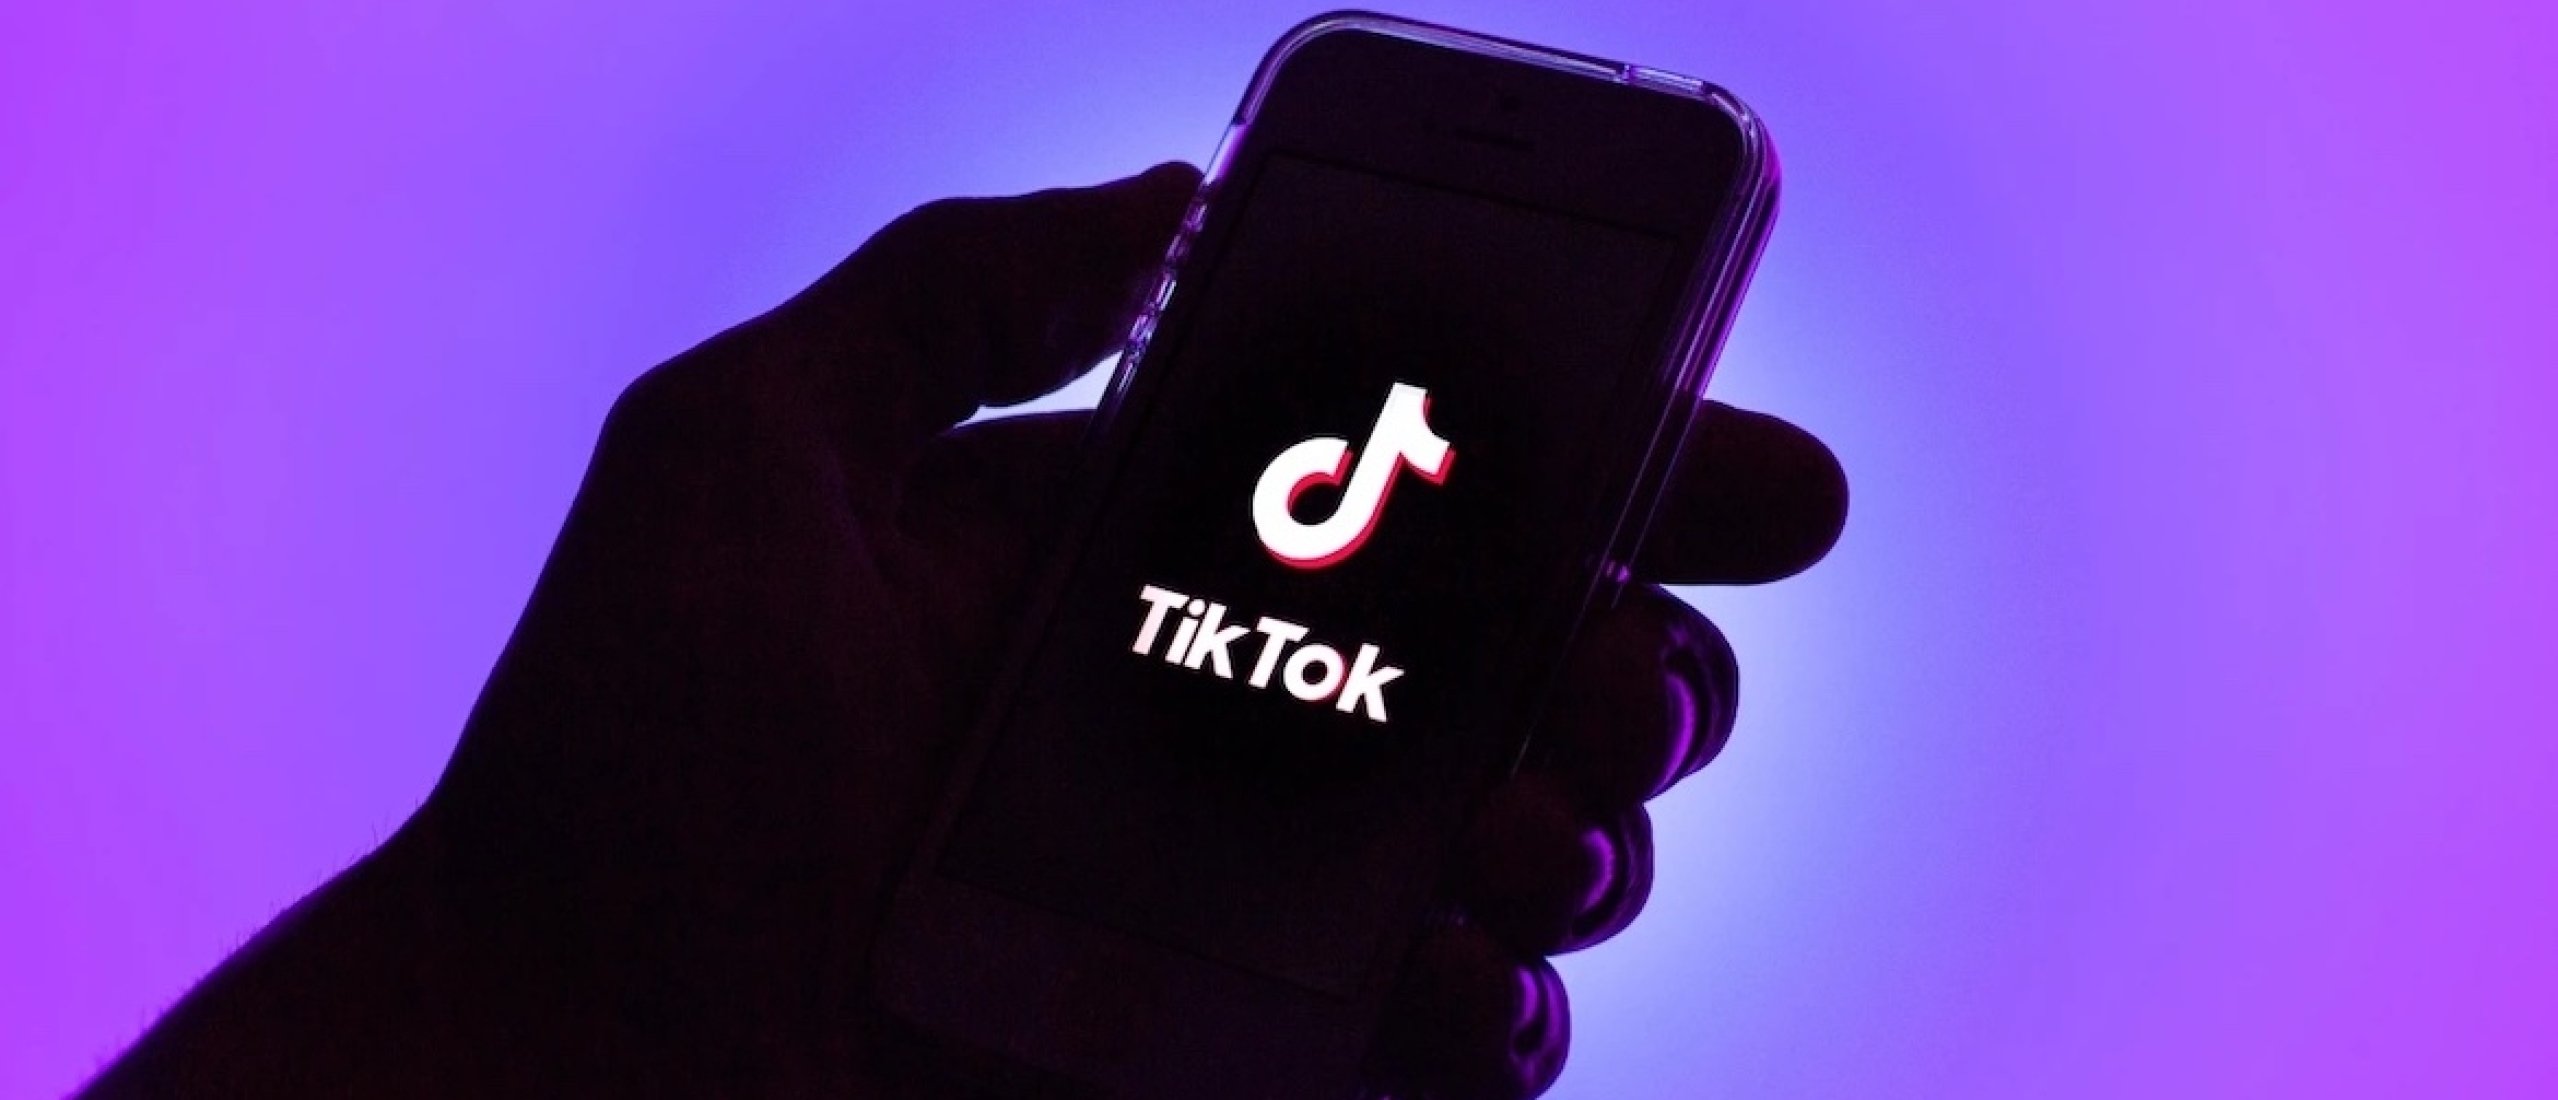 TikTok rolt interactieve add-ons voor advertenties wereldwijd uit